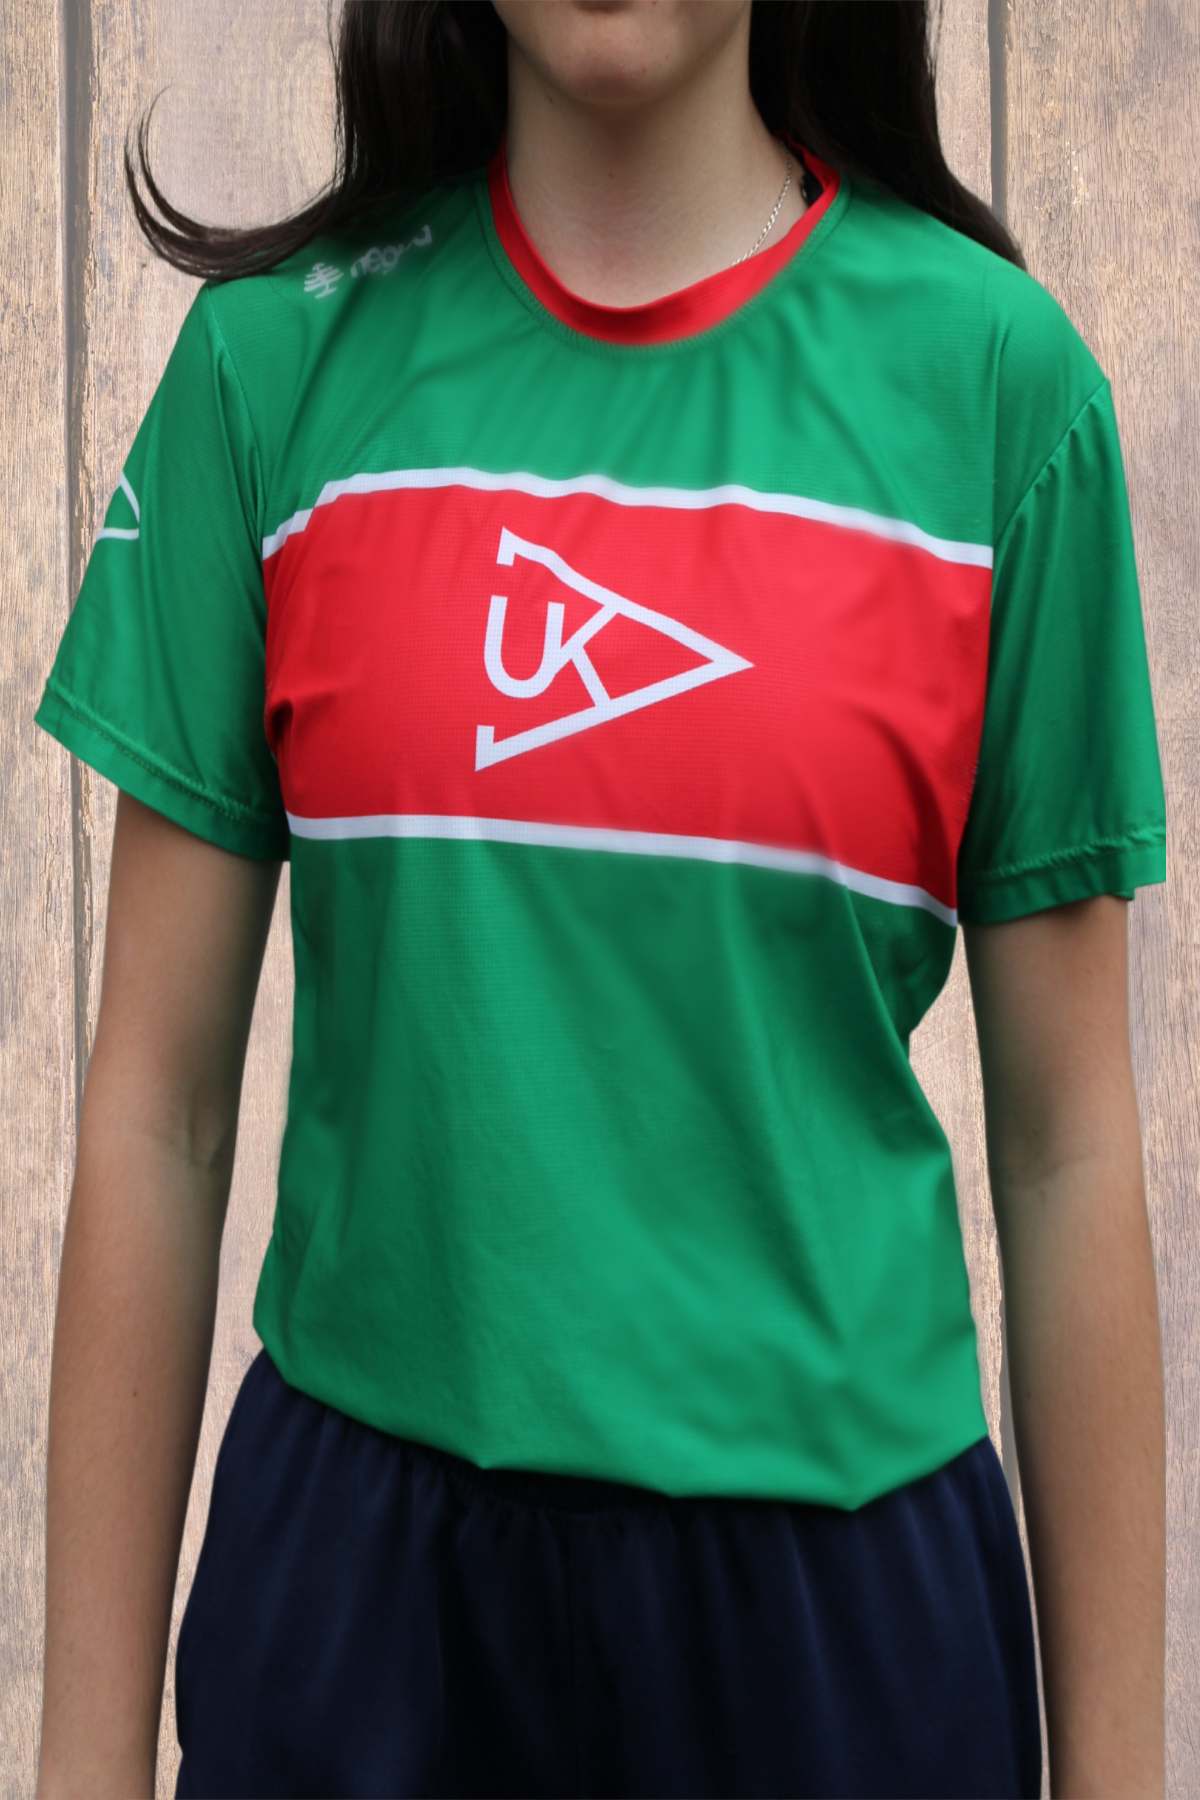 Camiseta Verde Chica Catalogo Productos Ur Kirolak 1